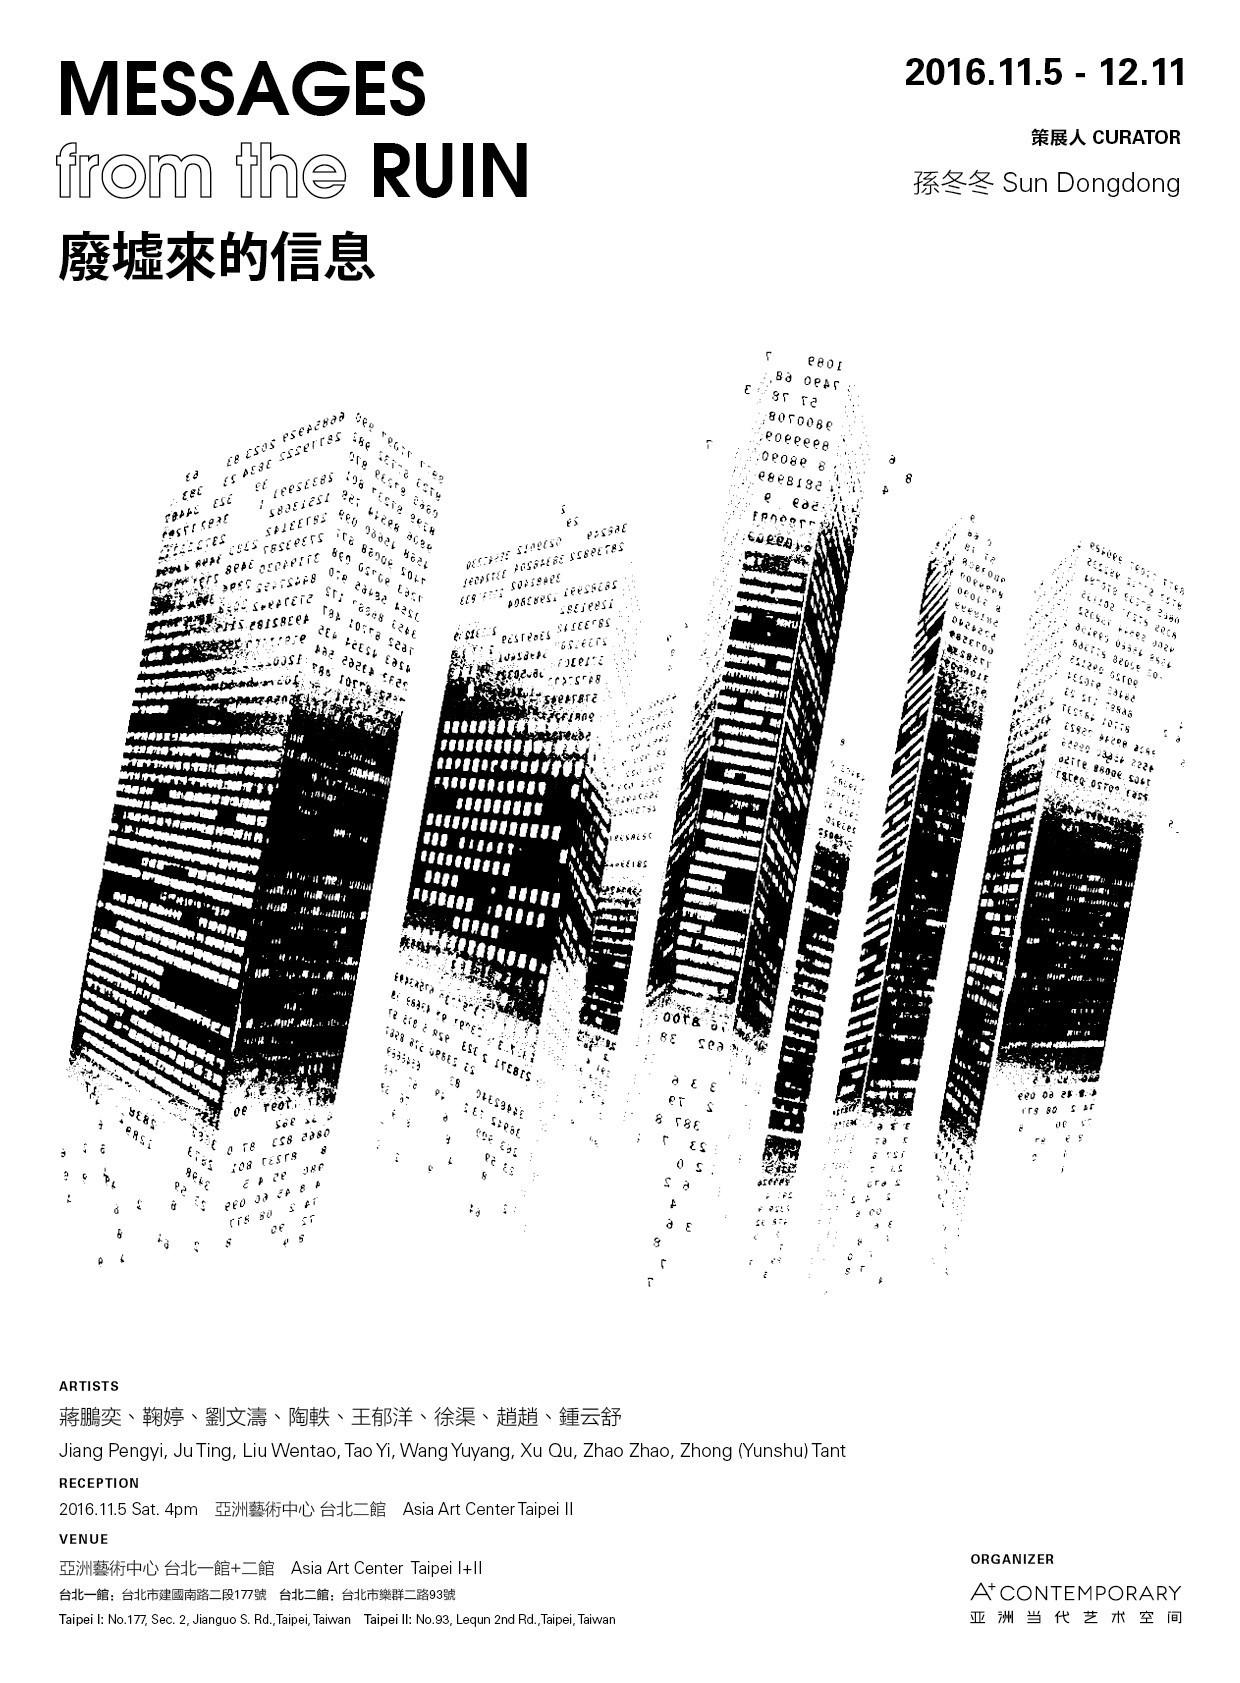 蔣鵬奕參與台北亞洲藝術中心的聯展“廢墟來的信息”